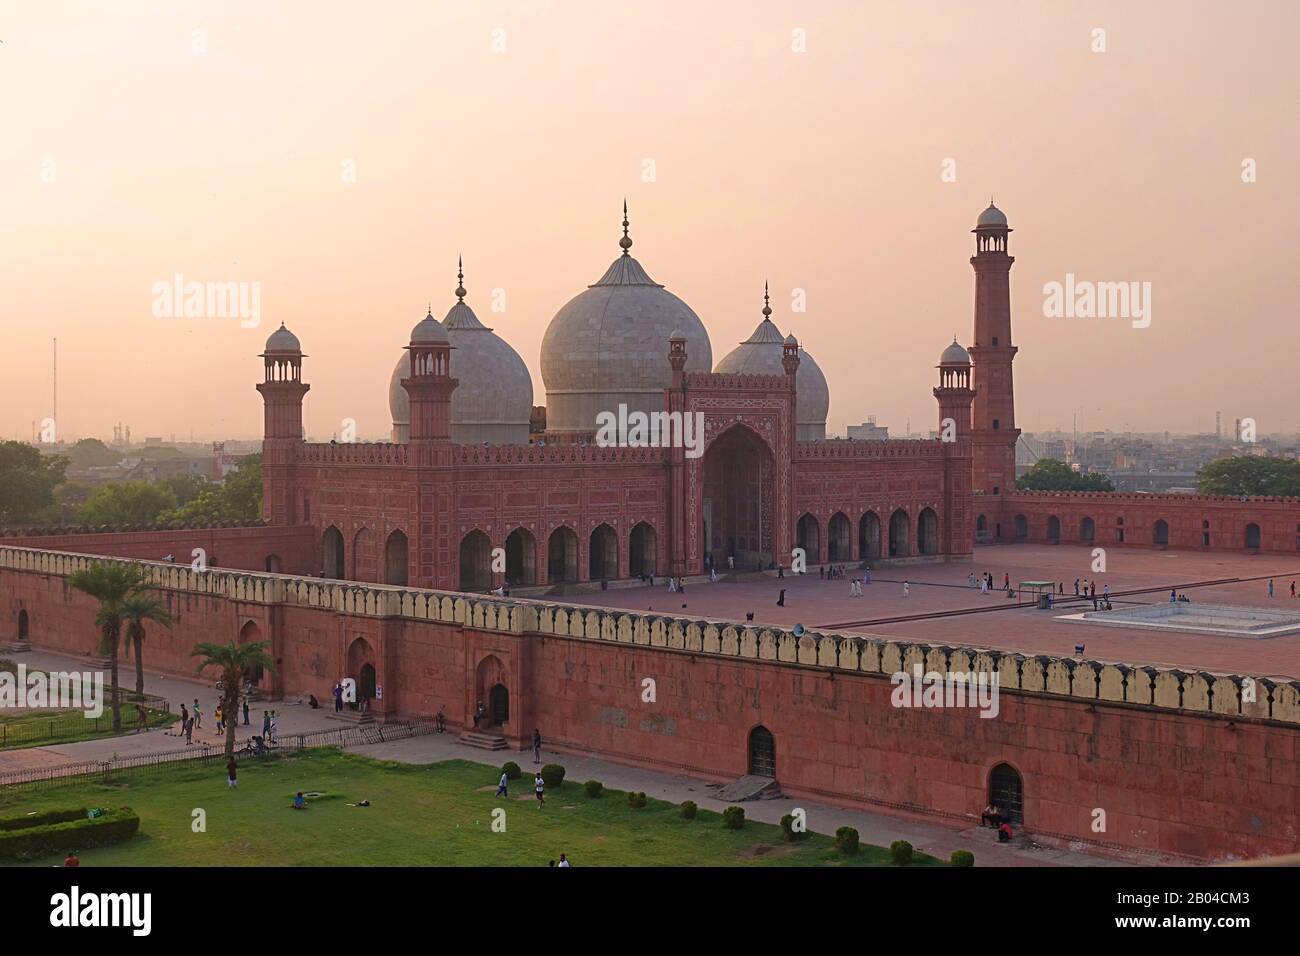 Coucher de soleil sur les dômes de la mosquée Badshahi (mosquée Empereur) construite en 1673 par l'empereur Mughal Aurangzeb à Lahore, Pakistan Banque D'Images